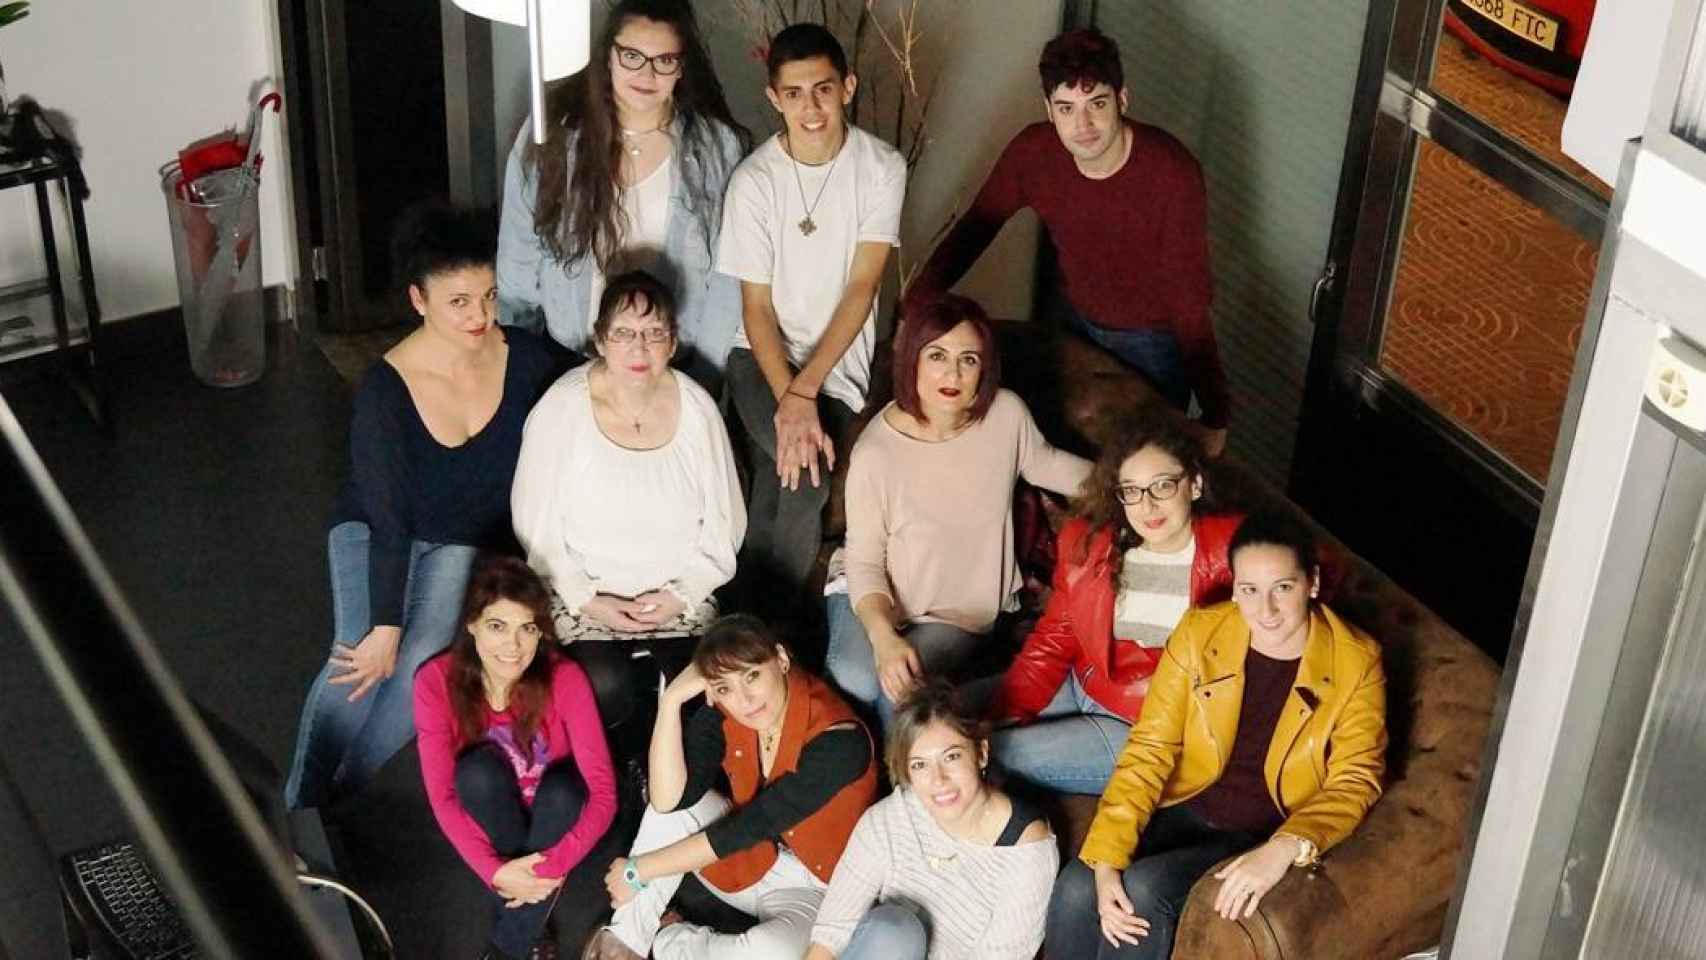 Primer grupo teatro de mujeres y LGTBIQ+ en Ciudad Real: Artis-Quetas